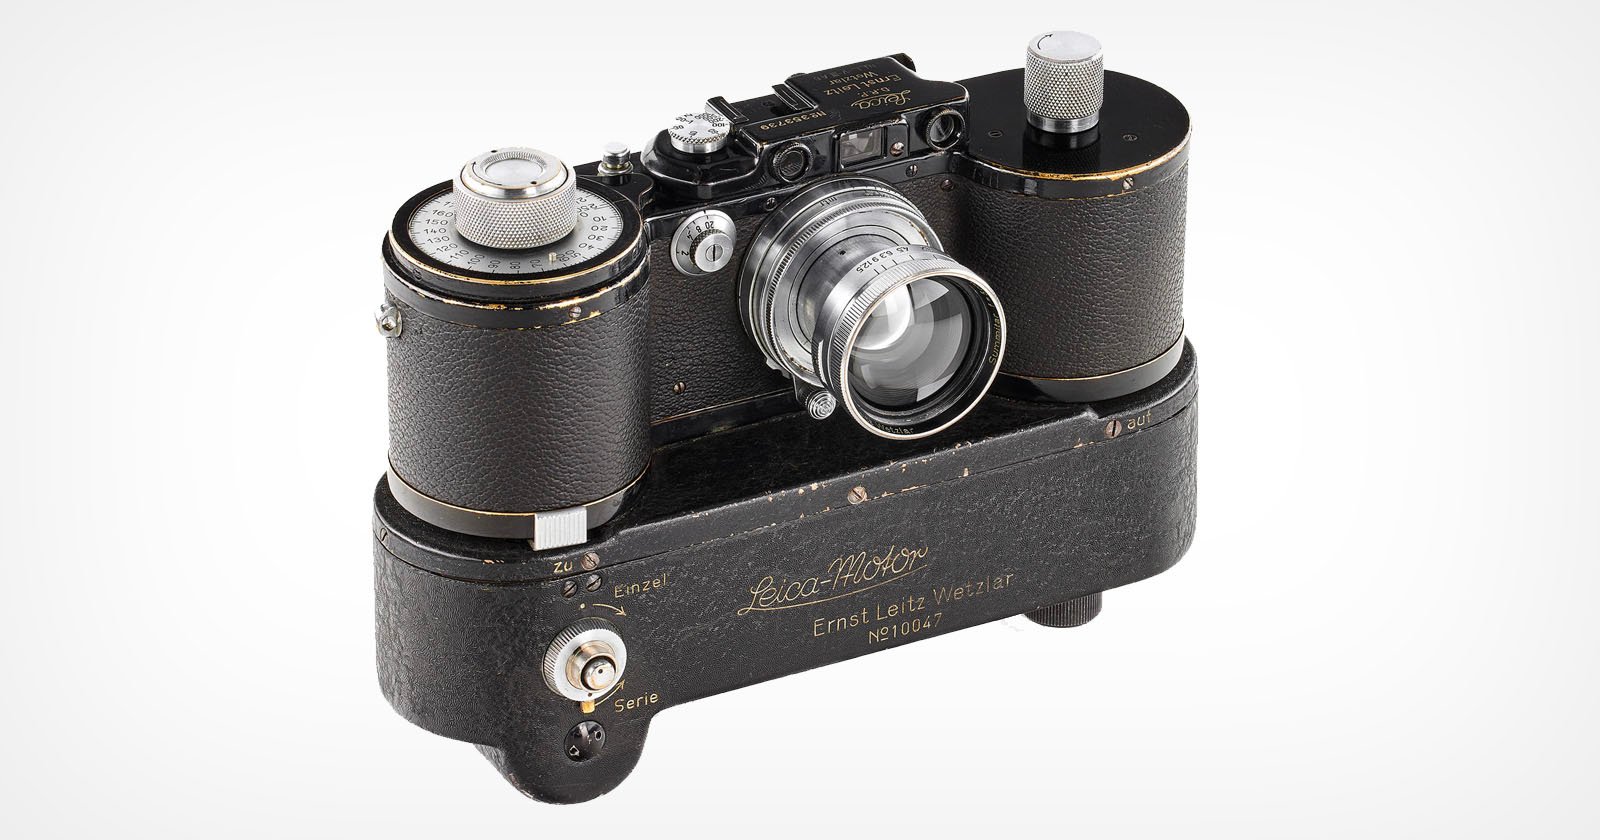  rare leica 35mm camera holds 250 photos 